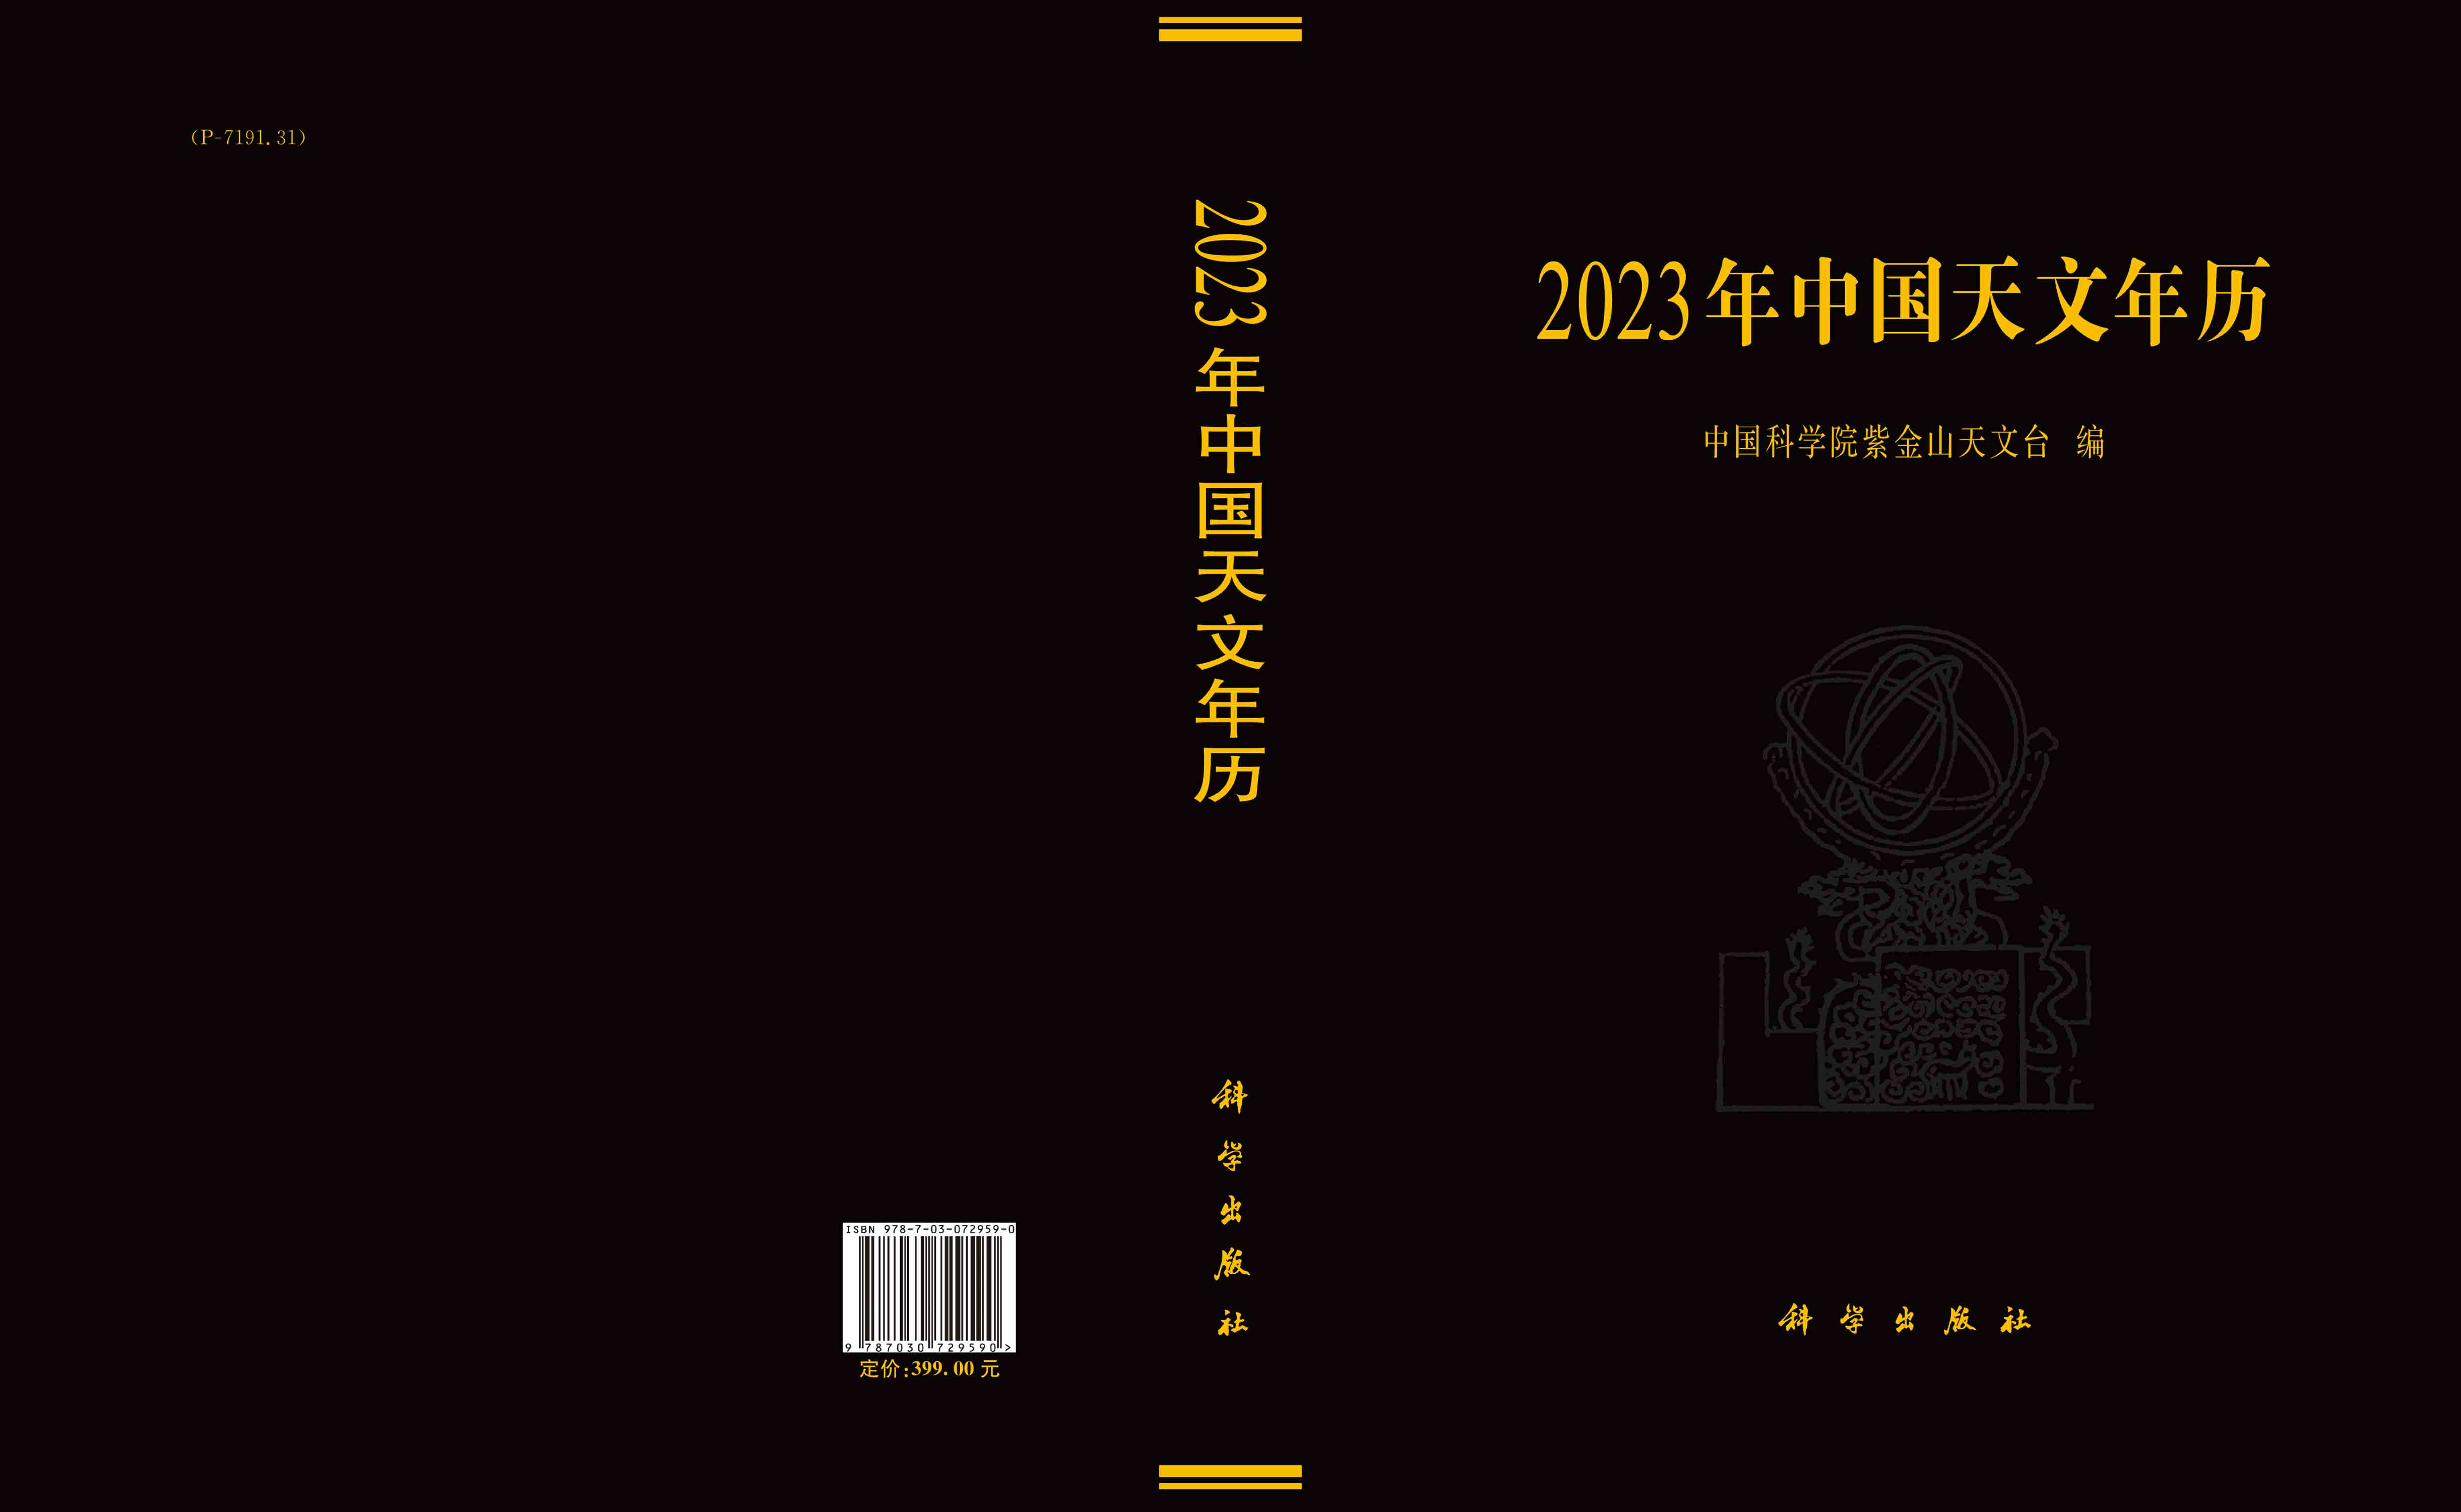 2023年中国天文年历